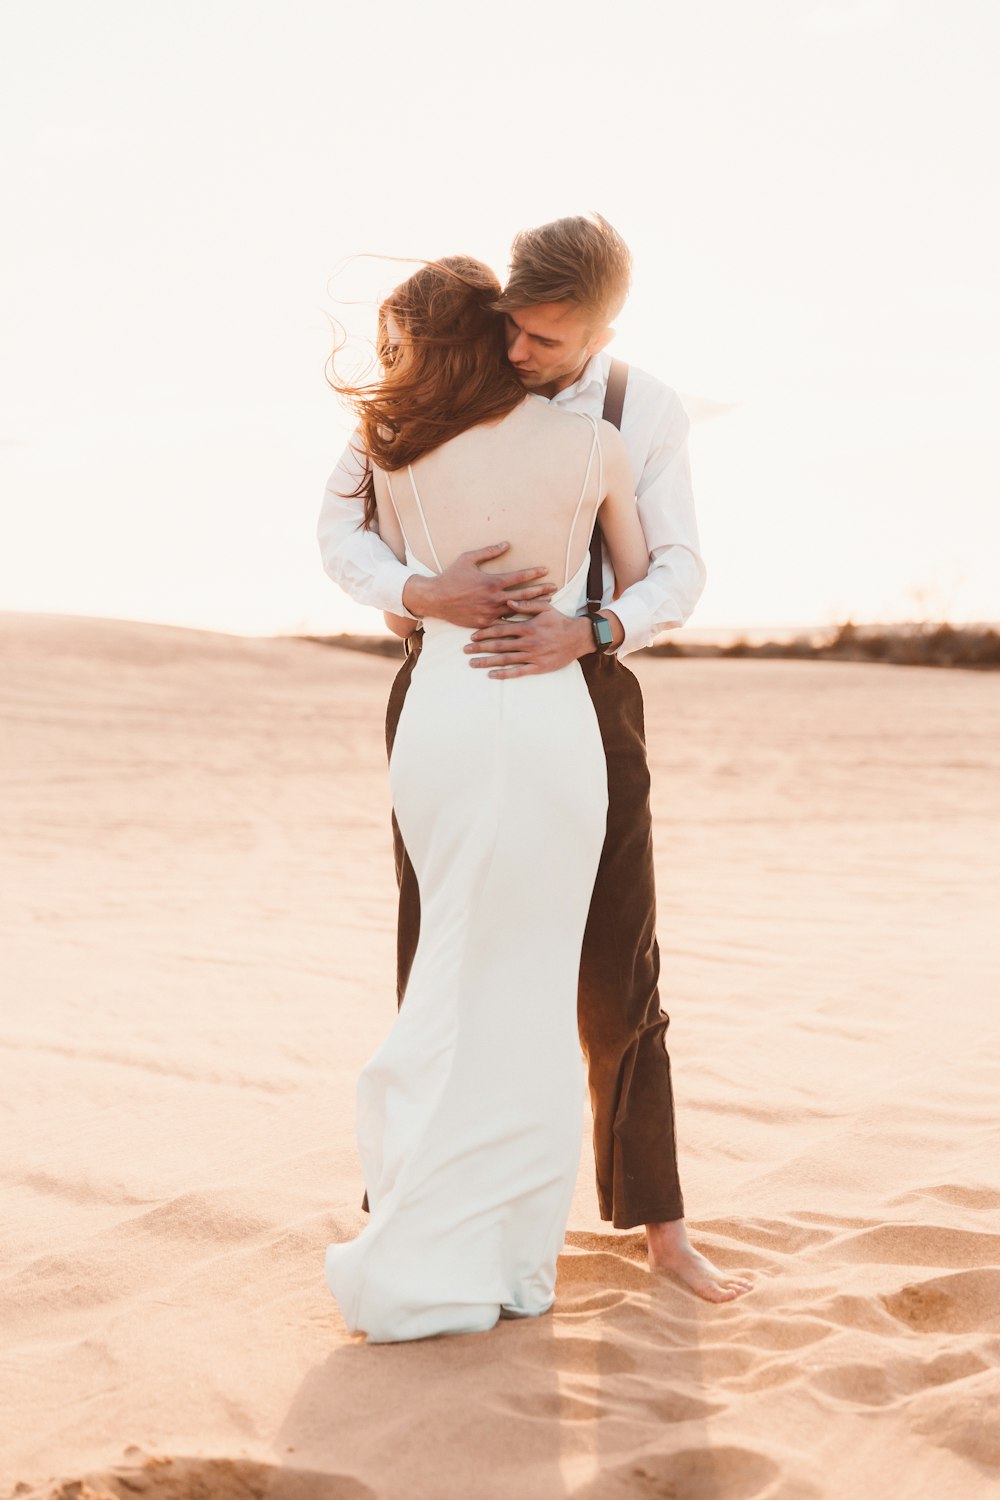 砂漠の砂の上で抱き合うカップル